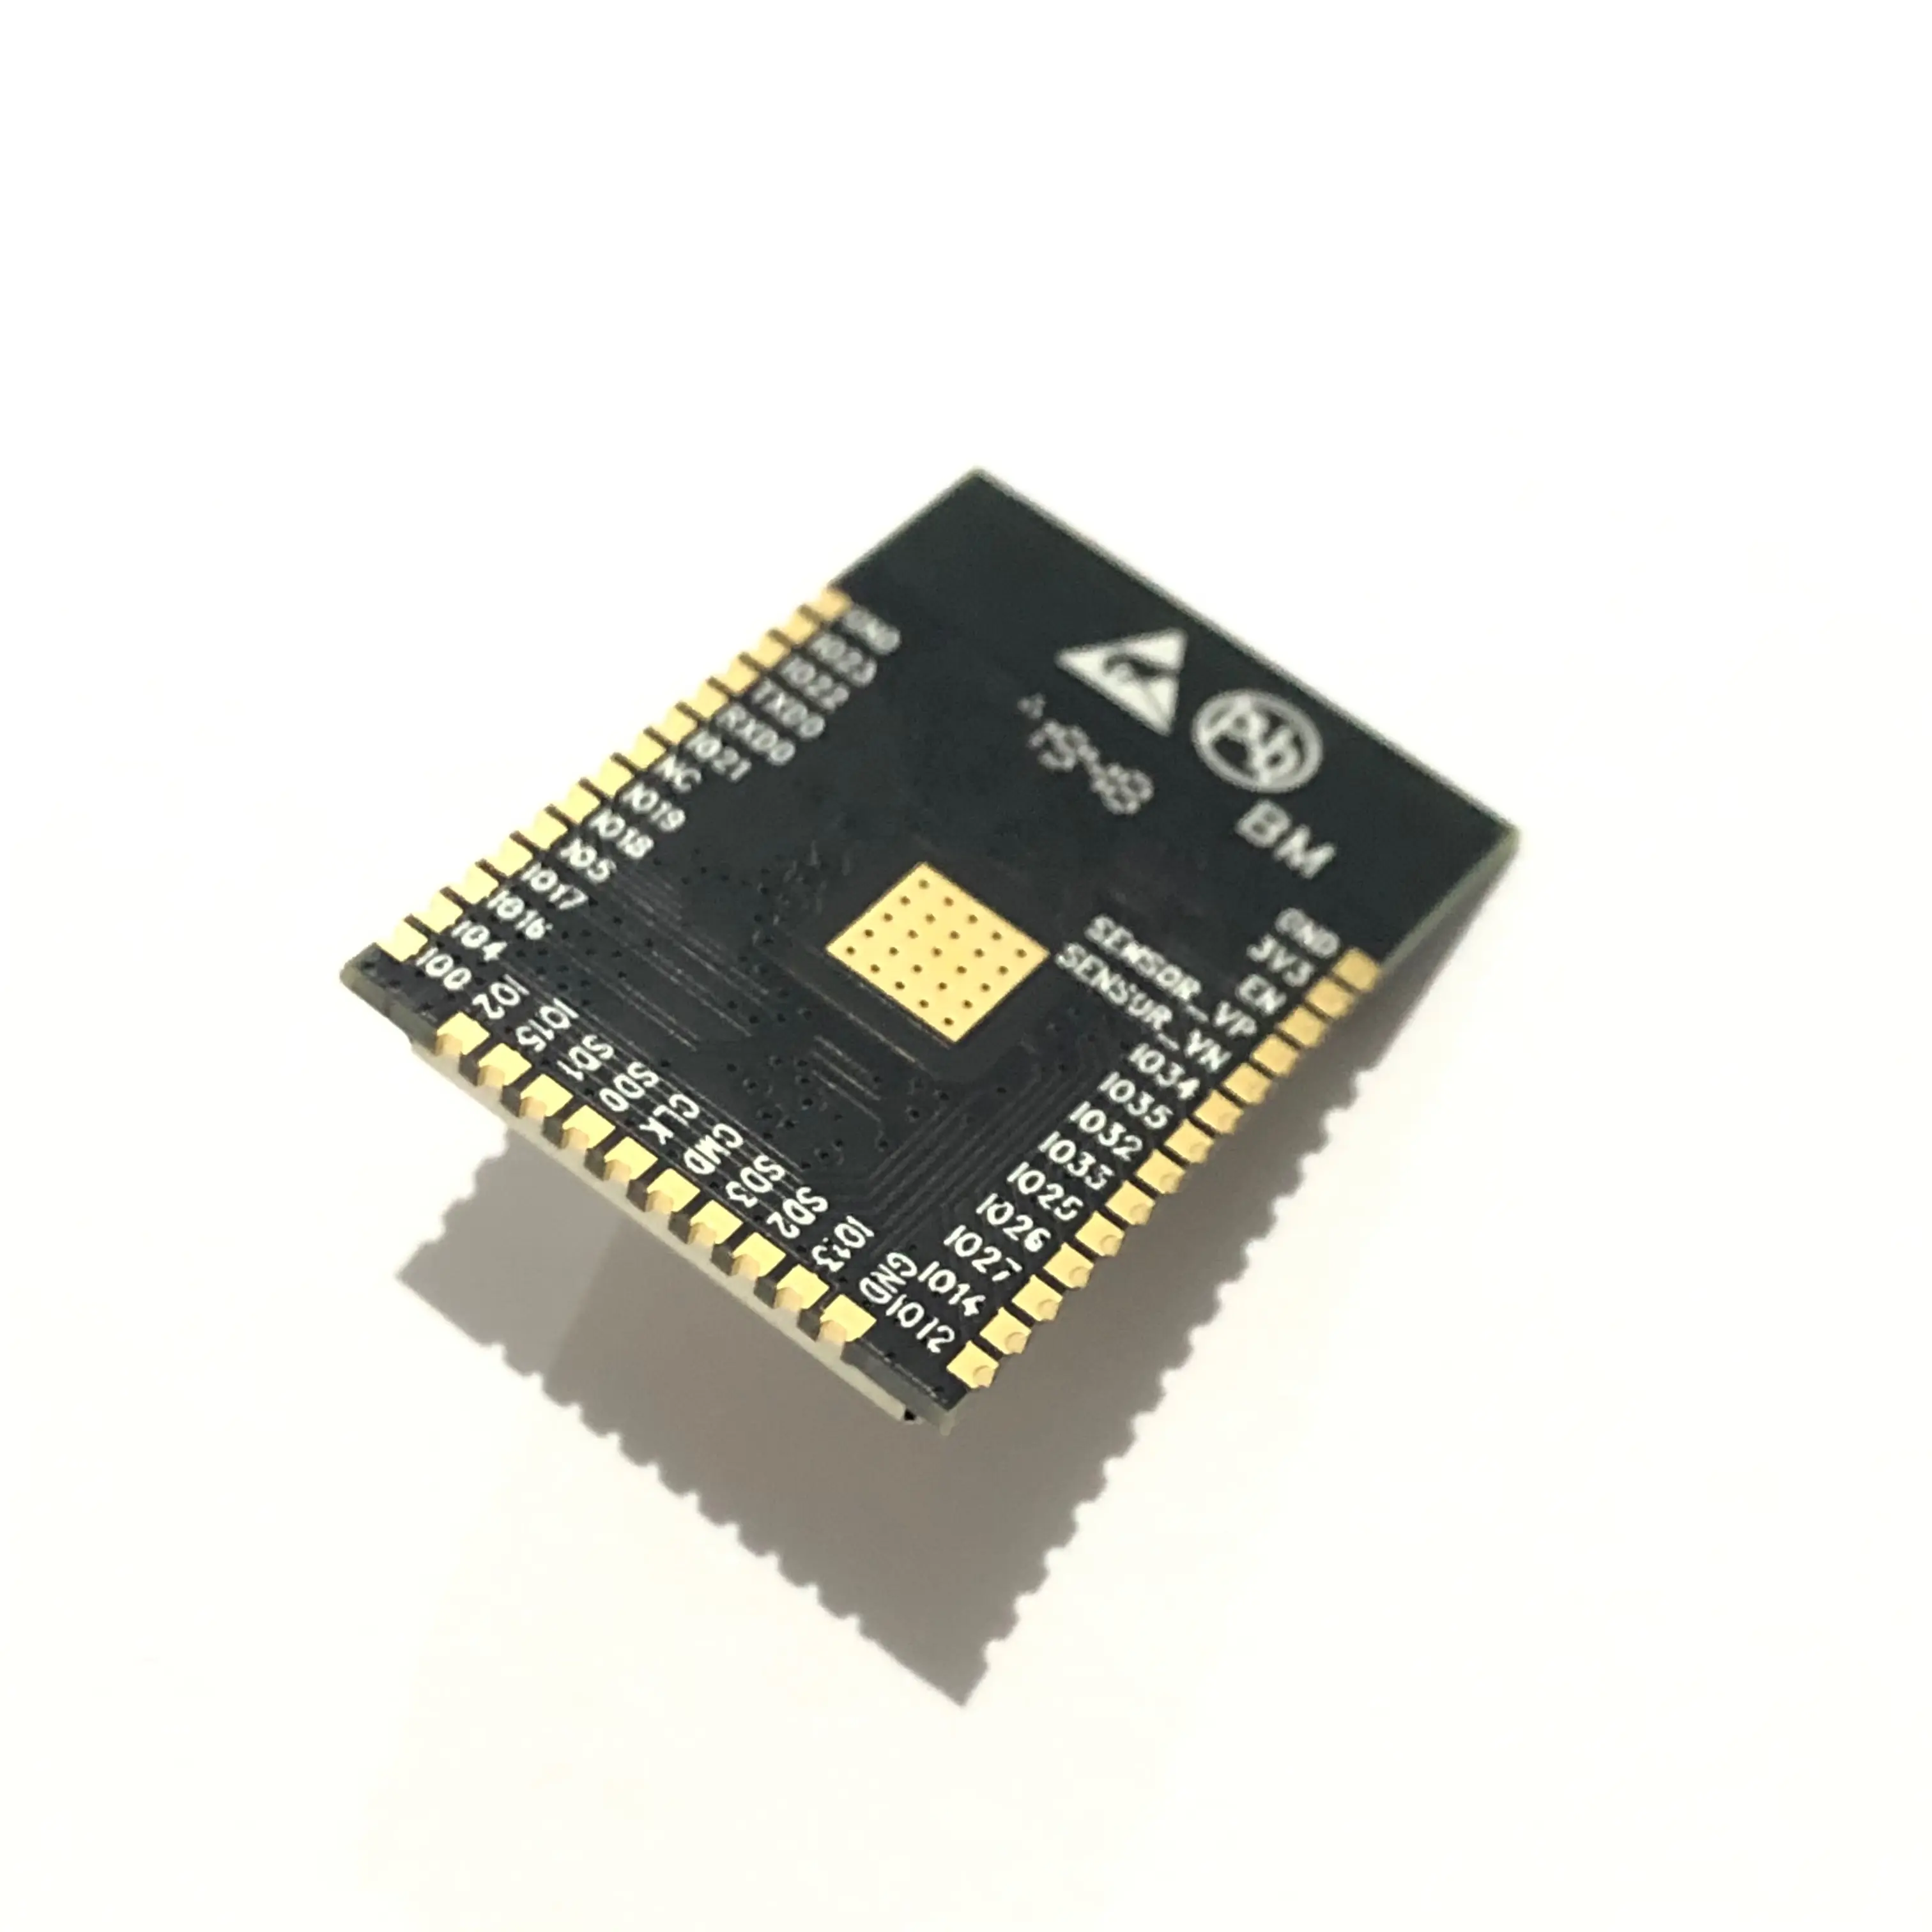 Original ESP8684-WROOM-04C-H2 32bit RISC-V MCU 2,4GHz Wi-Fi Bluetooth professionelle Suche nach knappen Materialien globaler Beschaff